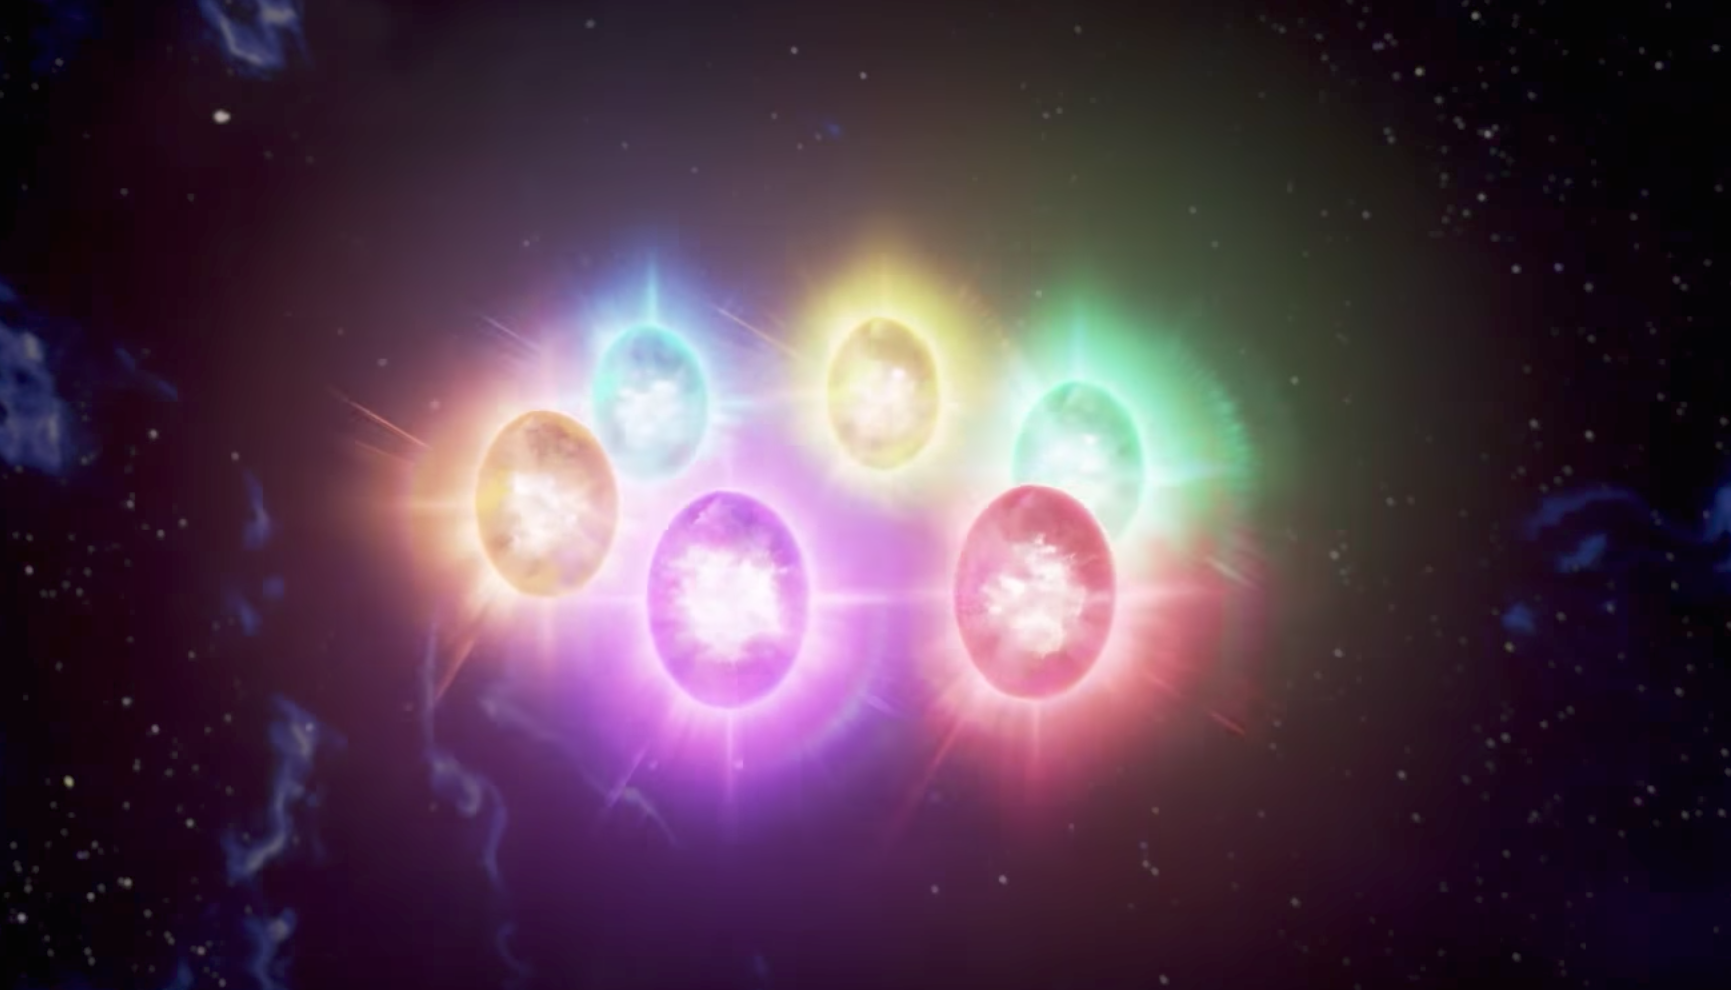 Infinity Gauntlet Wallpaper 4K, Thanos, Avengers: Endgame